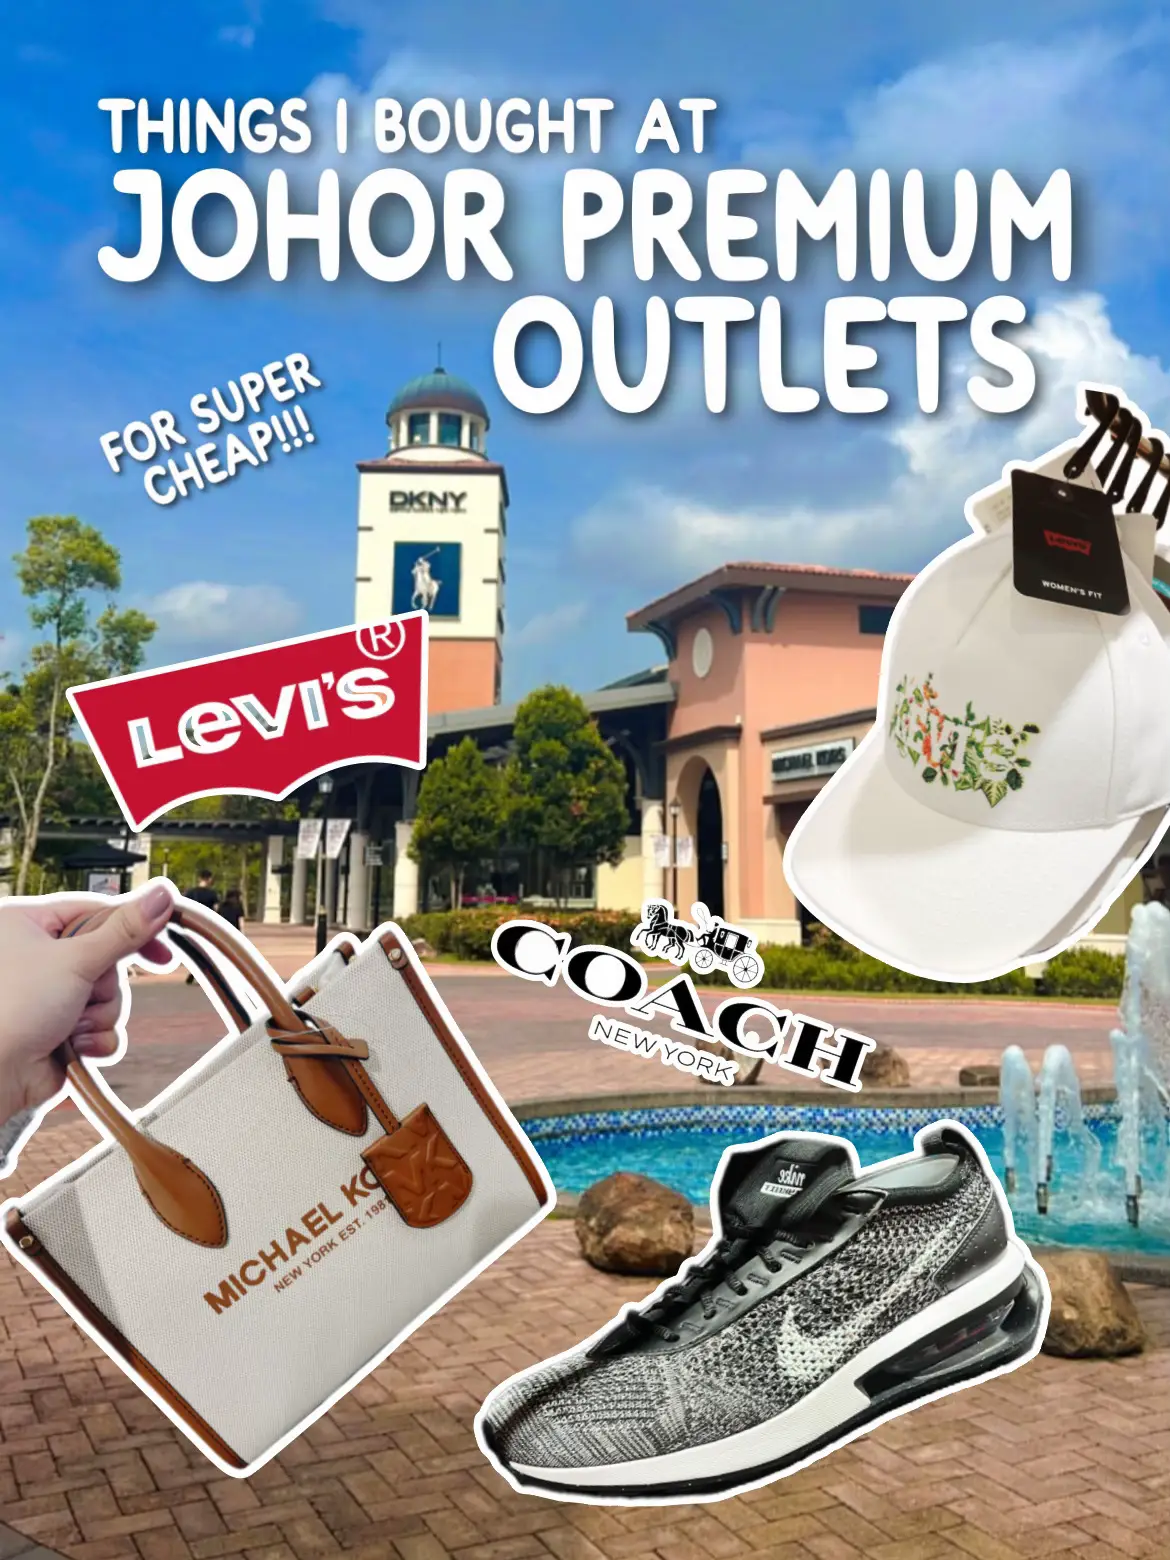 Johor Premium Outlets (JPO)